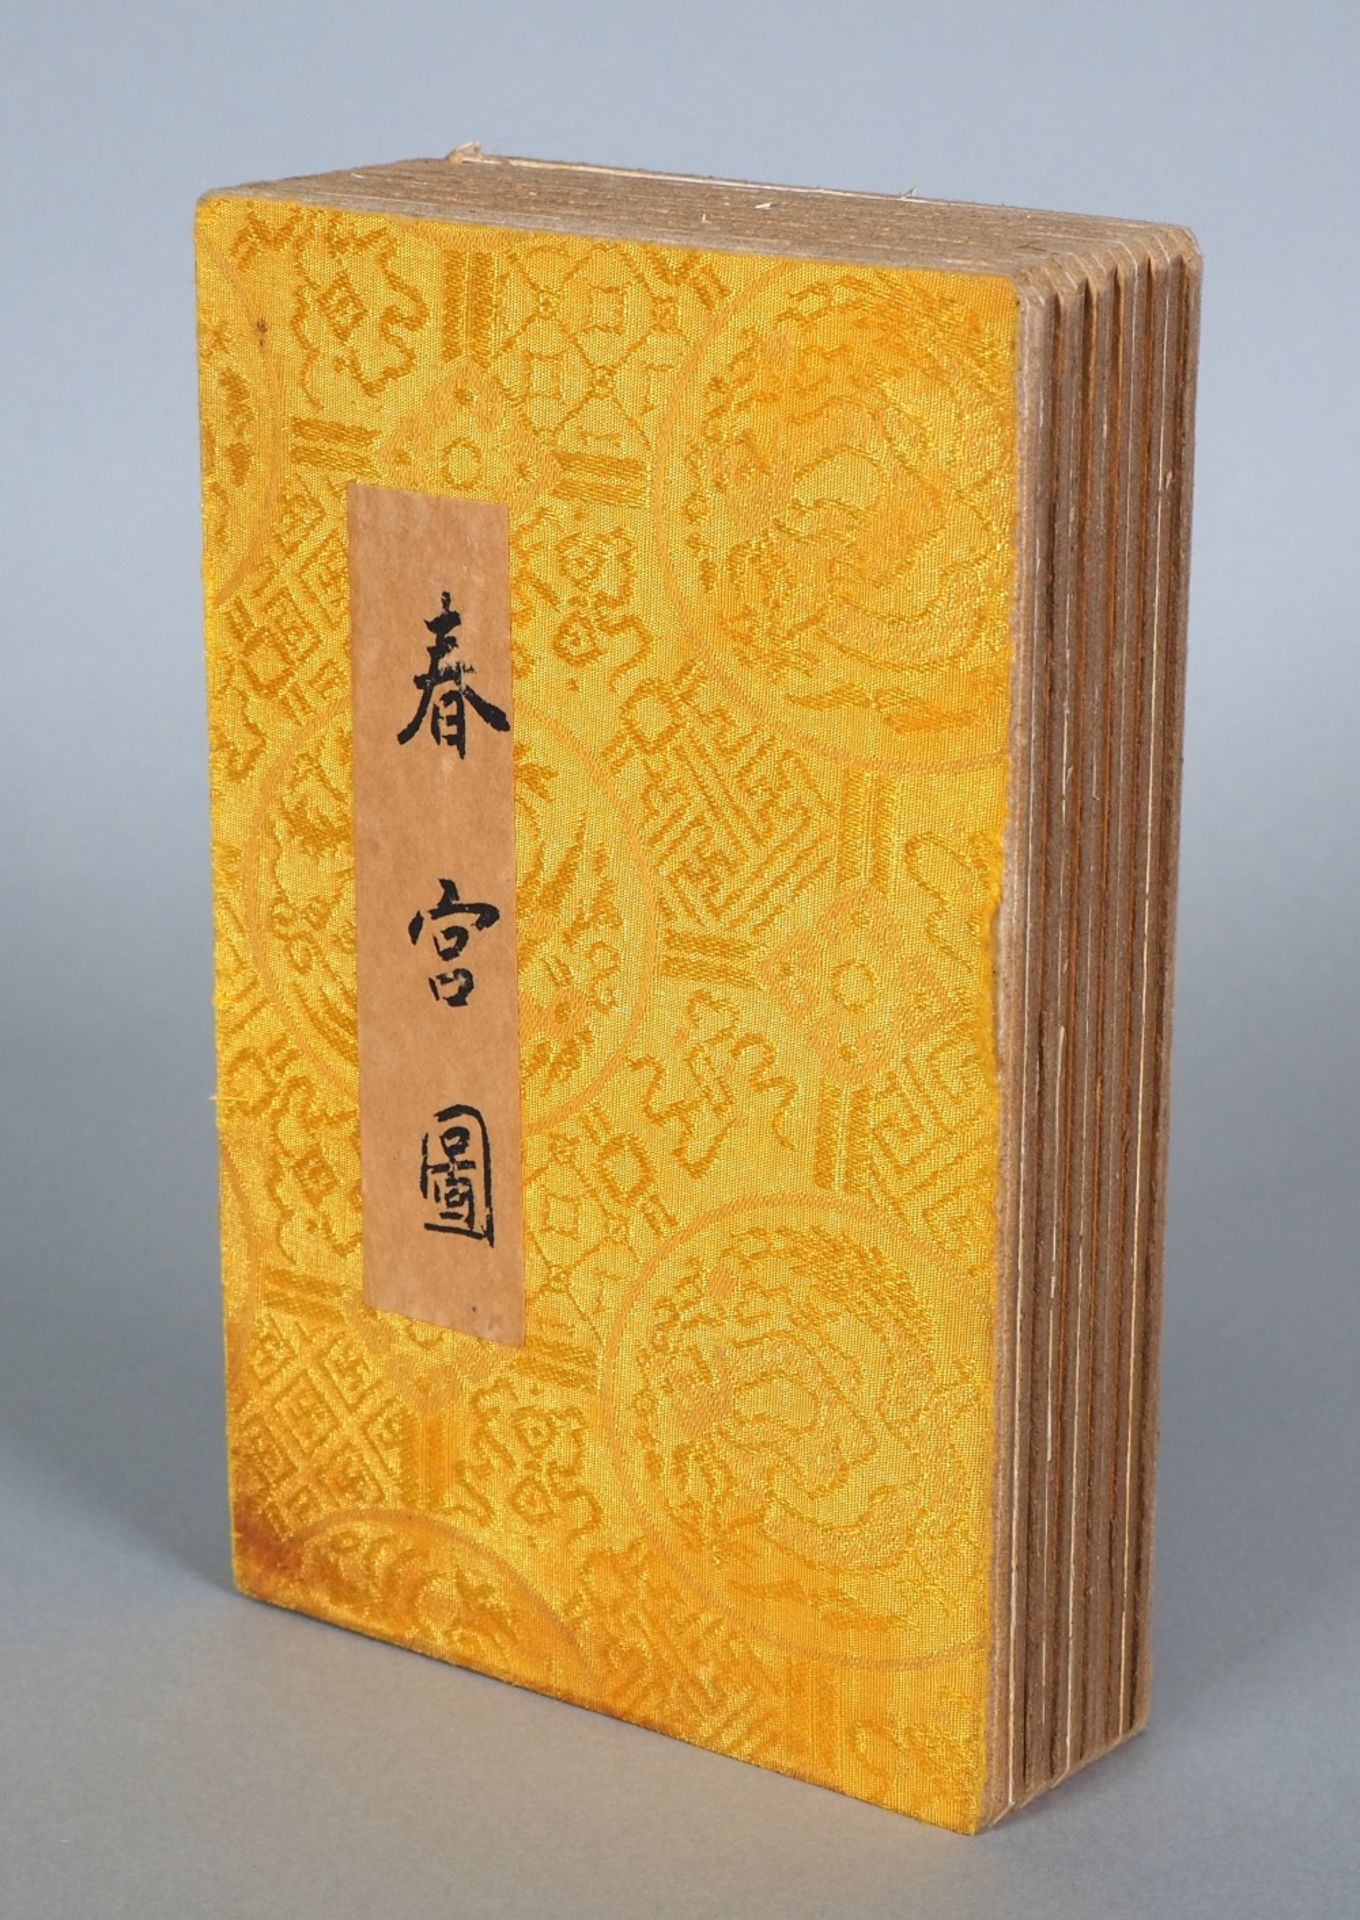 Faltbuch Erotika, China um 1900, Chinesisches Kopfkissenbuch (pillow book - shunga)